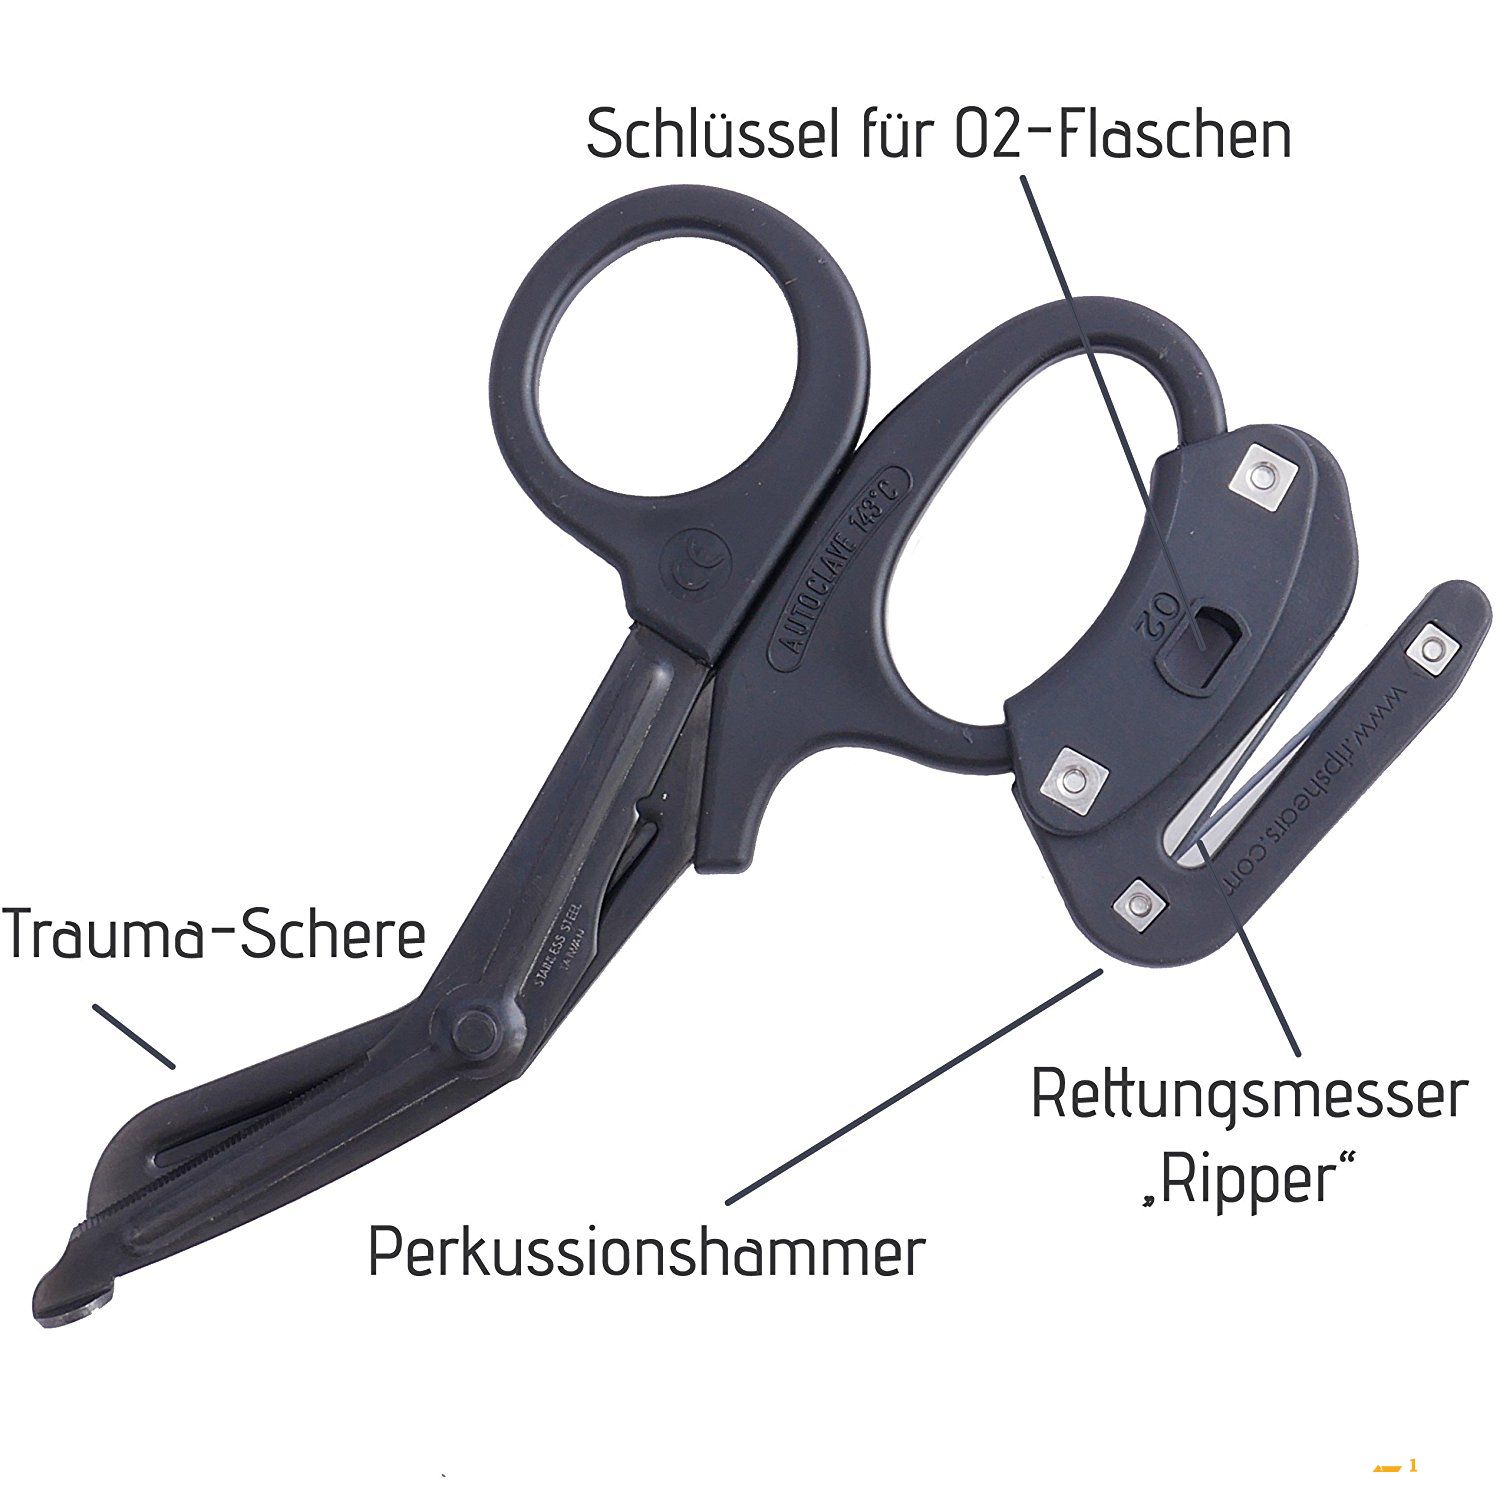 Ripshears 战术创伤剪刀 功能多样随身便携